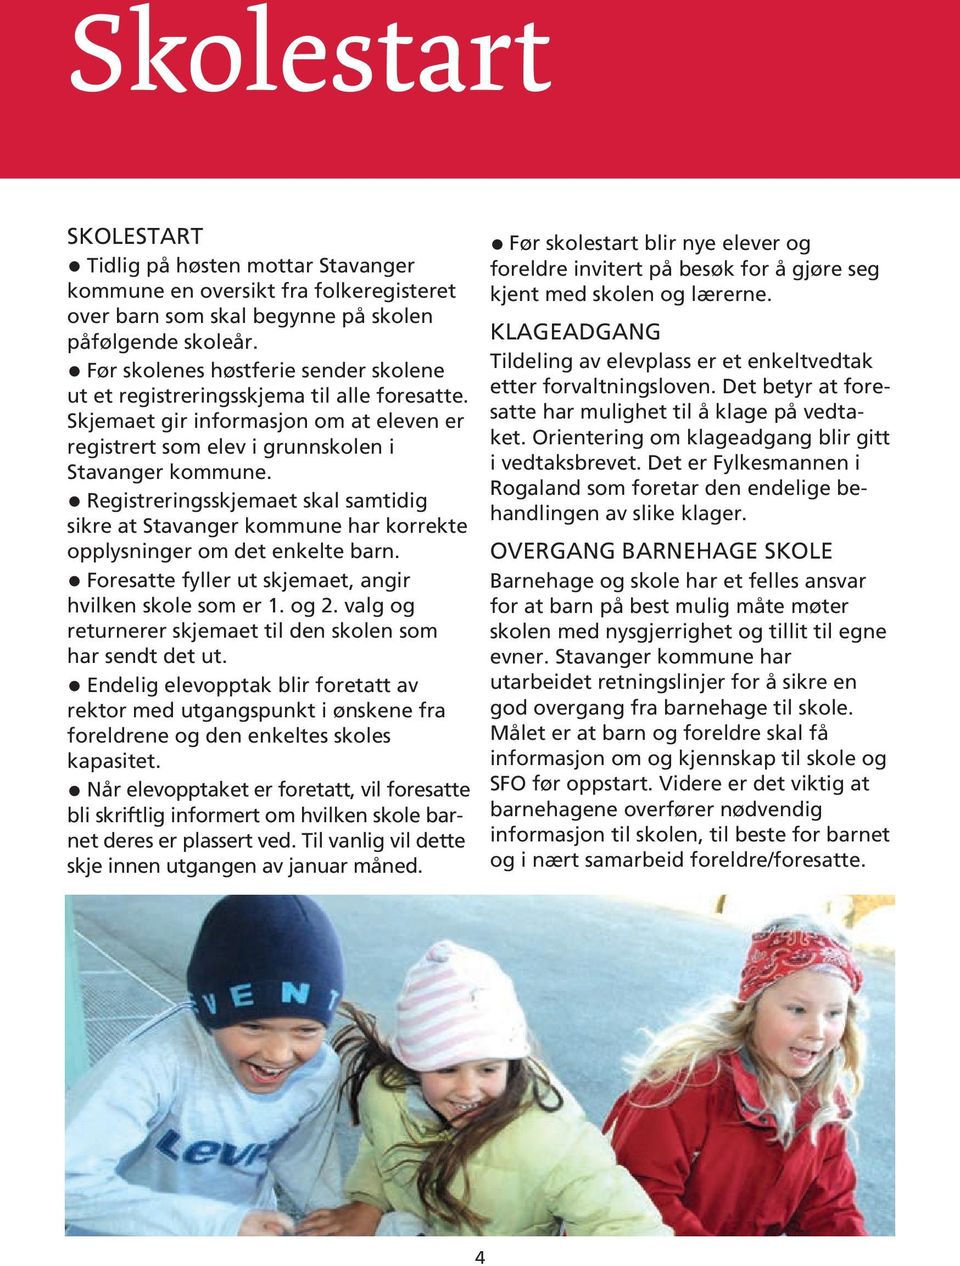 Registreringsskjemaet skal samtidig sikre at Stavanger kommune har korrekte opplysninger om det enkelte barn. Foresatte fyller ut skjemaet, angir hvilken skole som er 1. og 2.